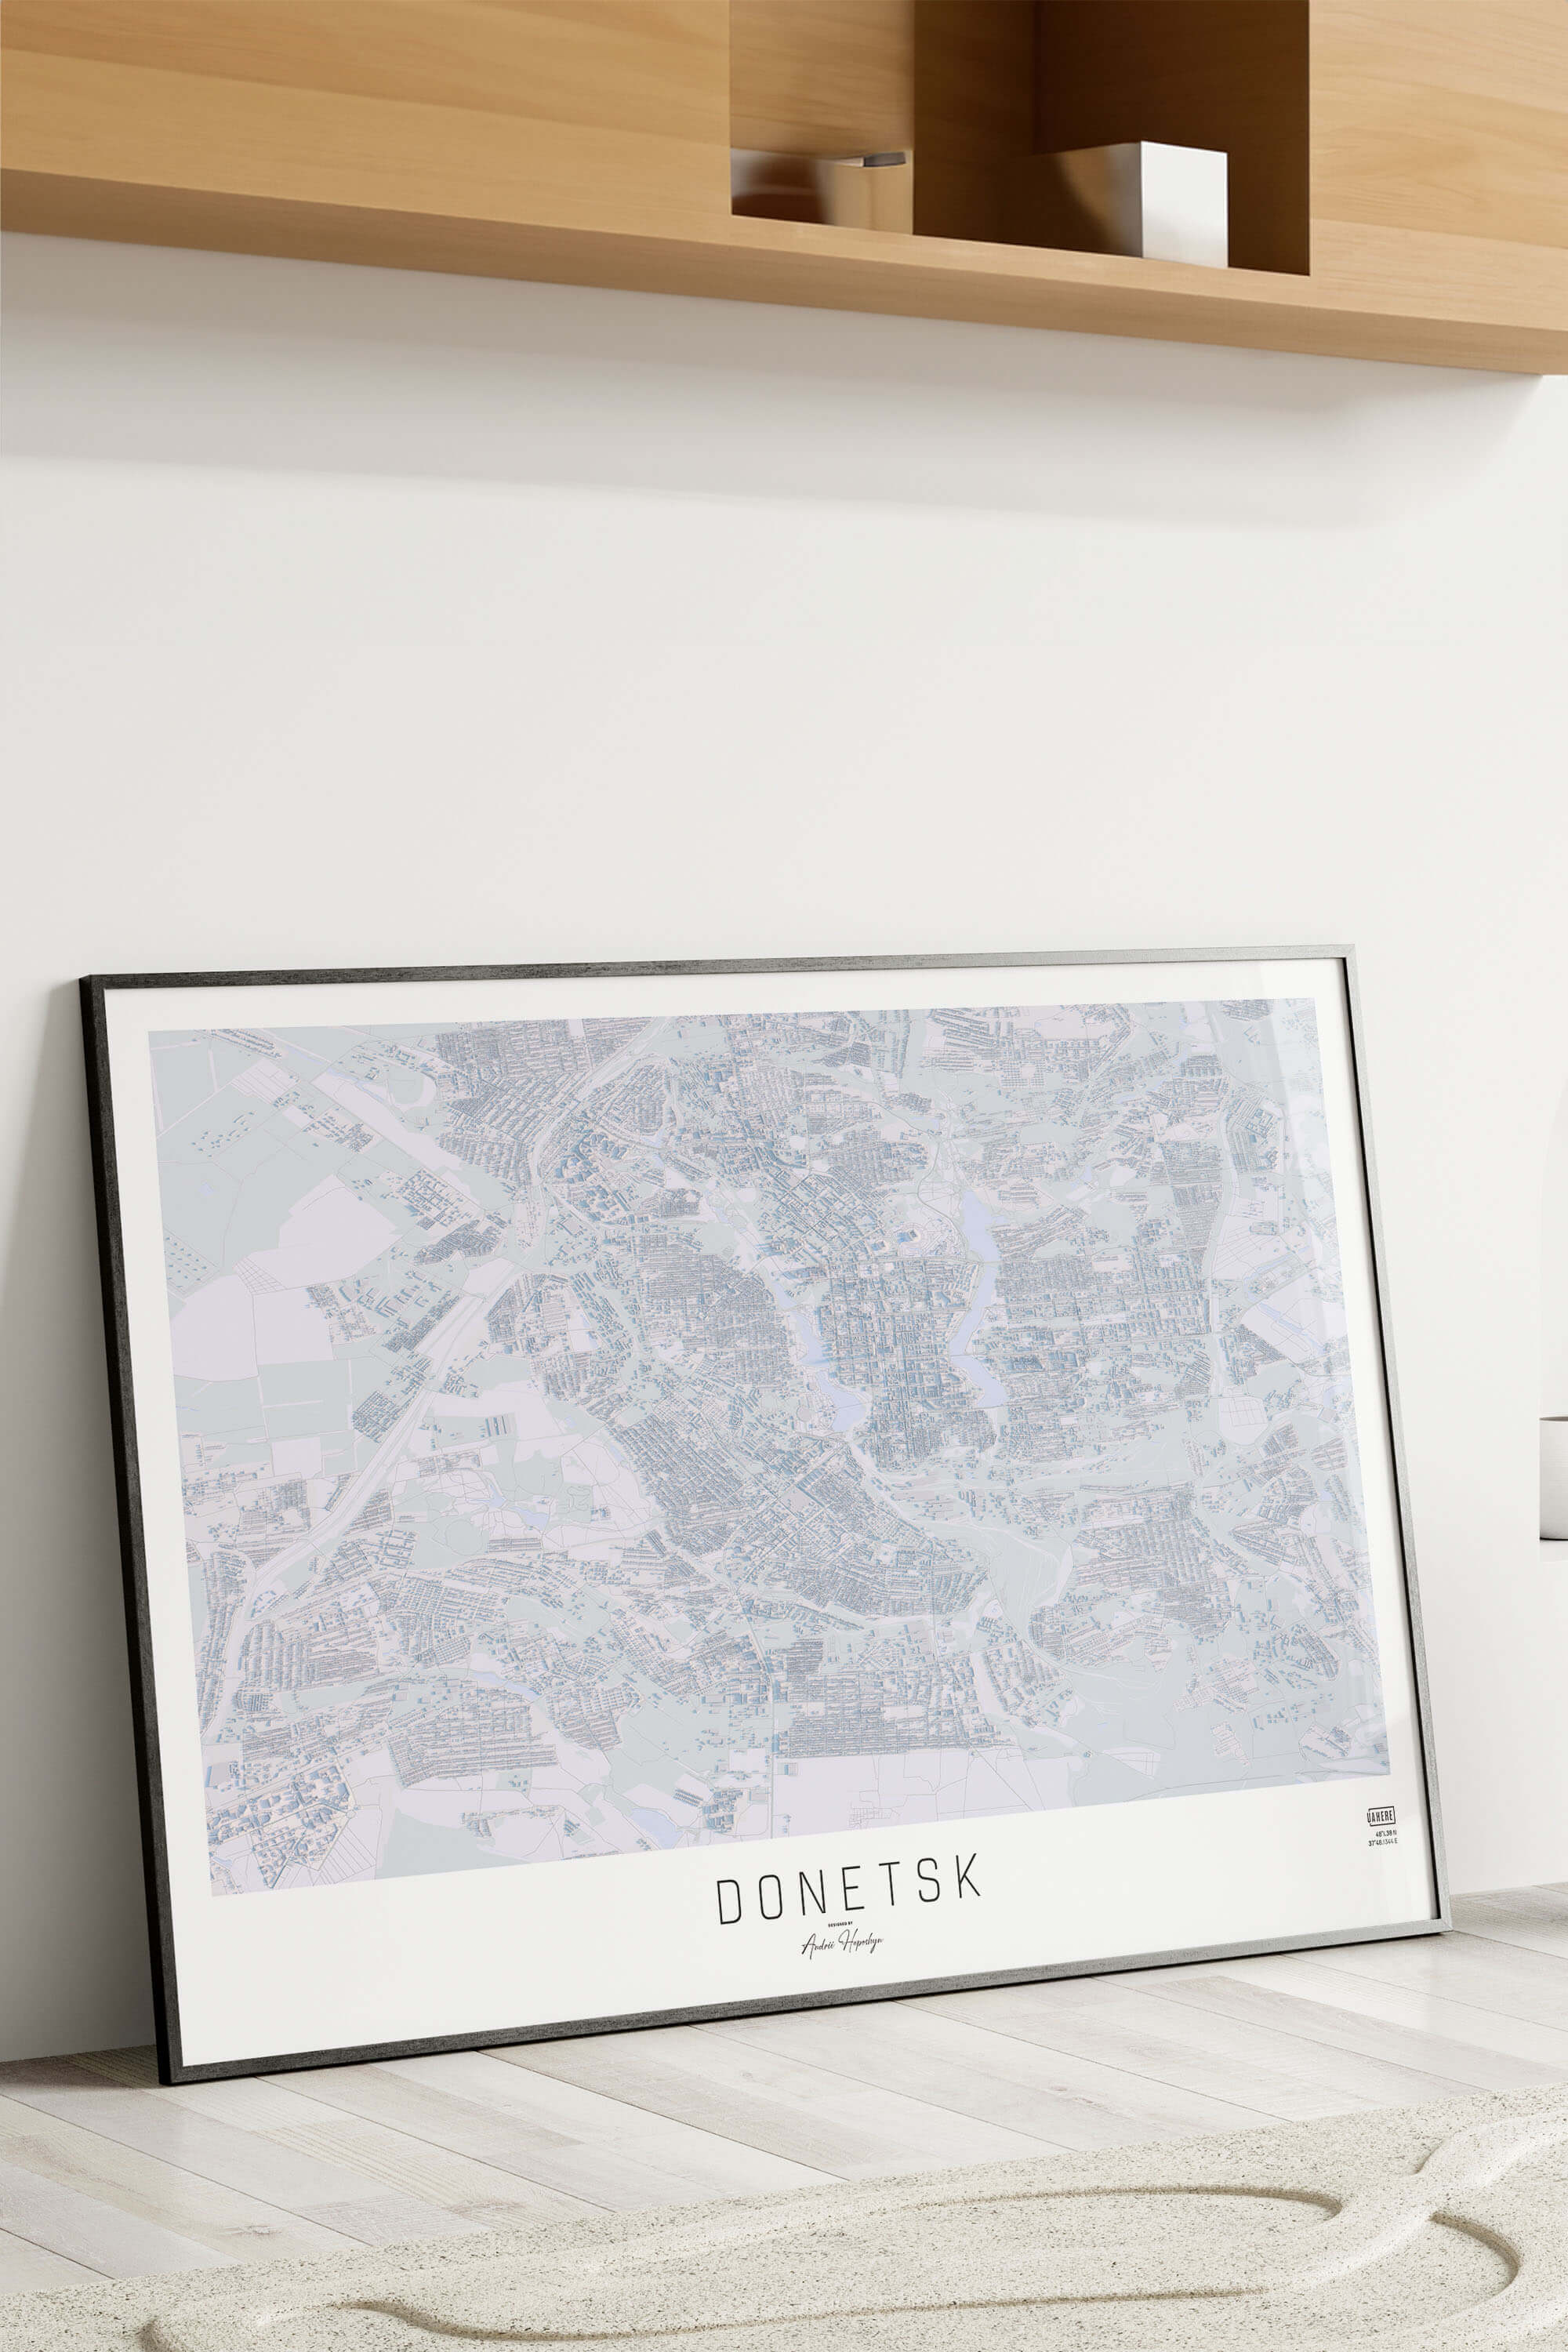 Картина міста Донецьк в рамці на фоні стіни